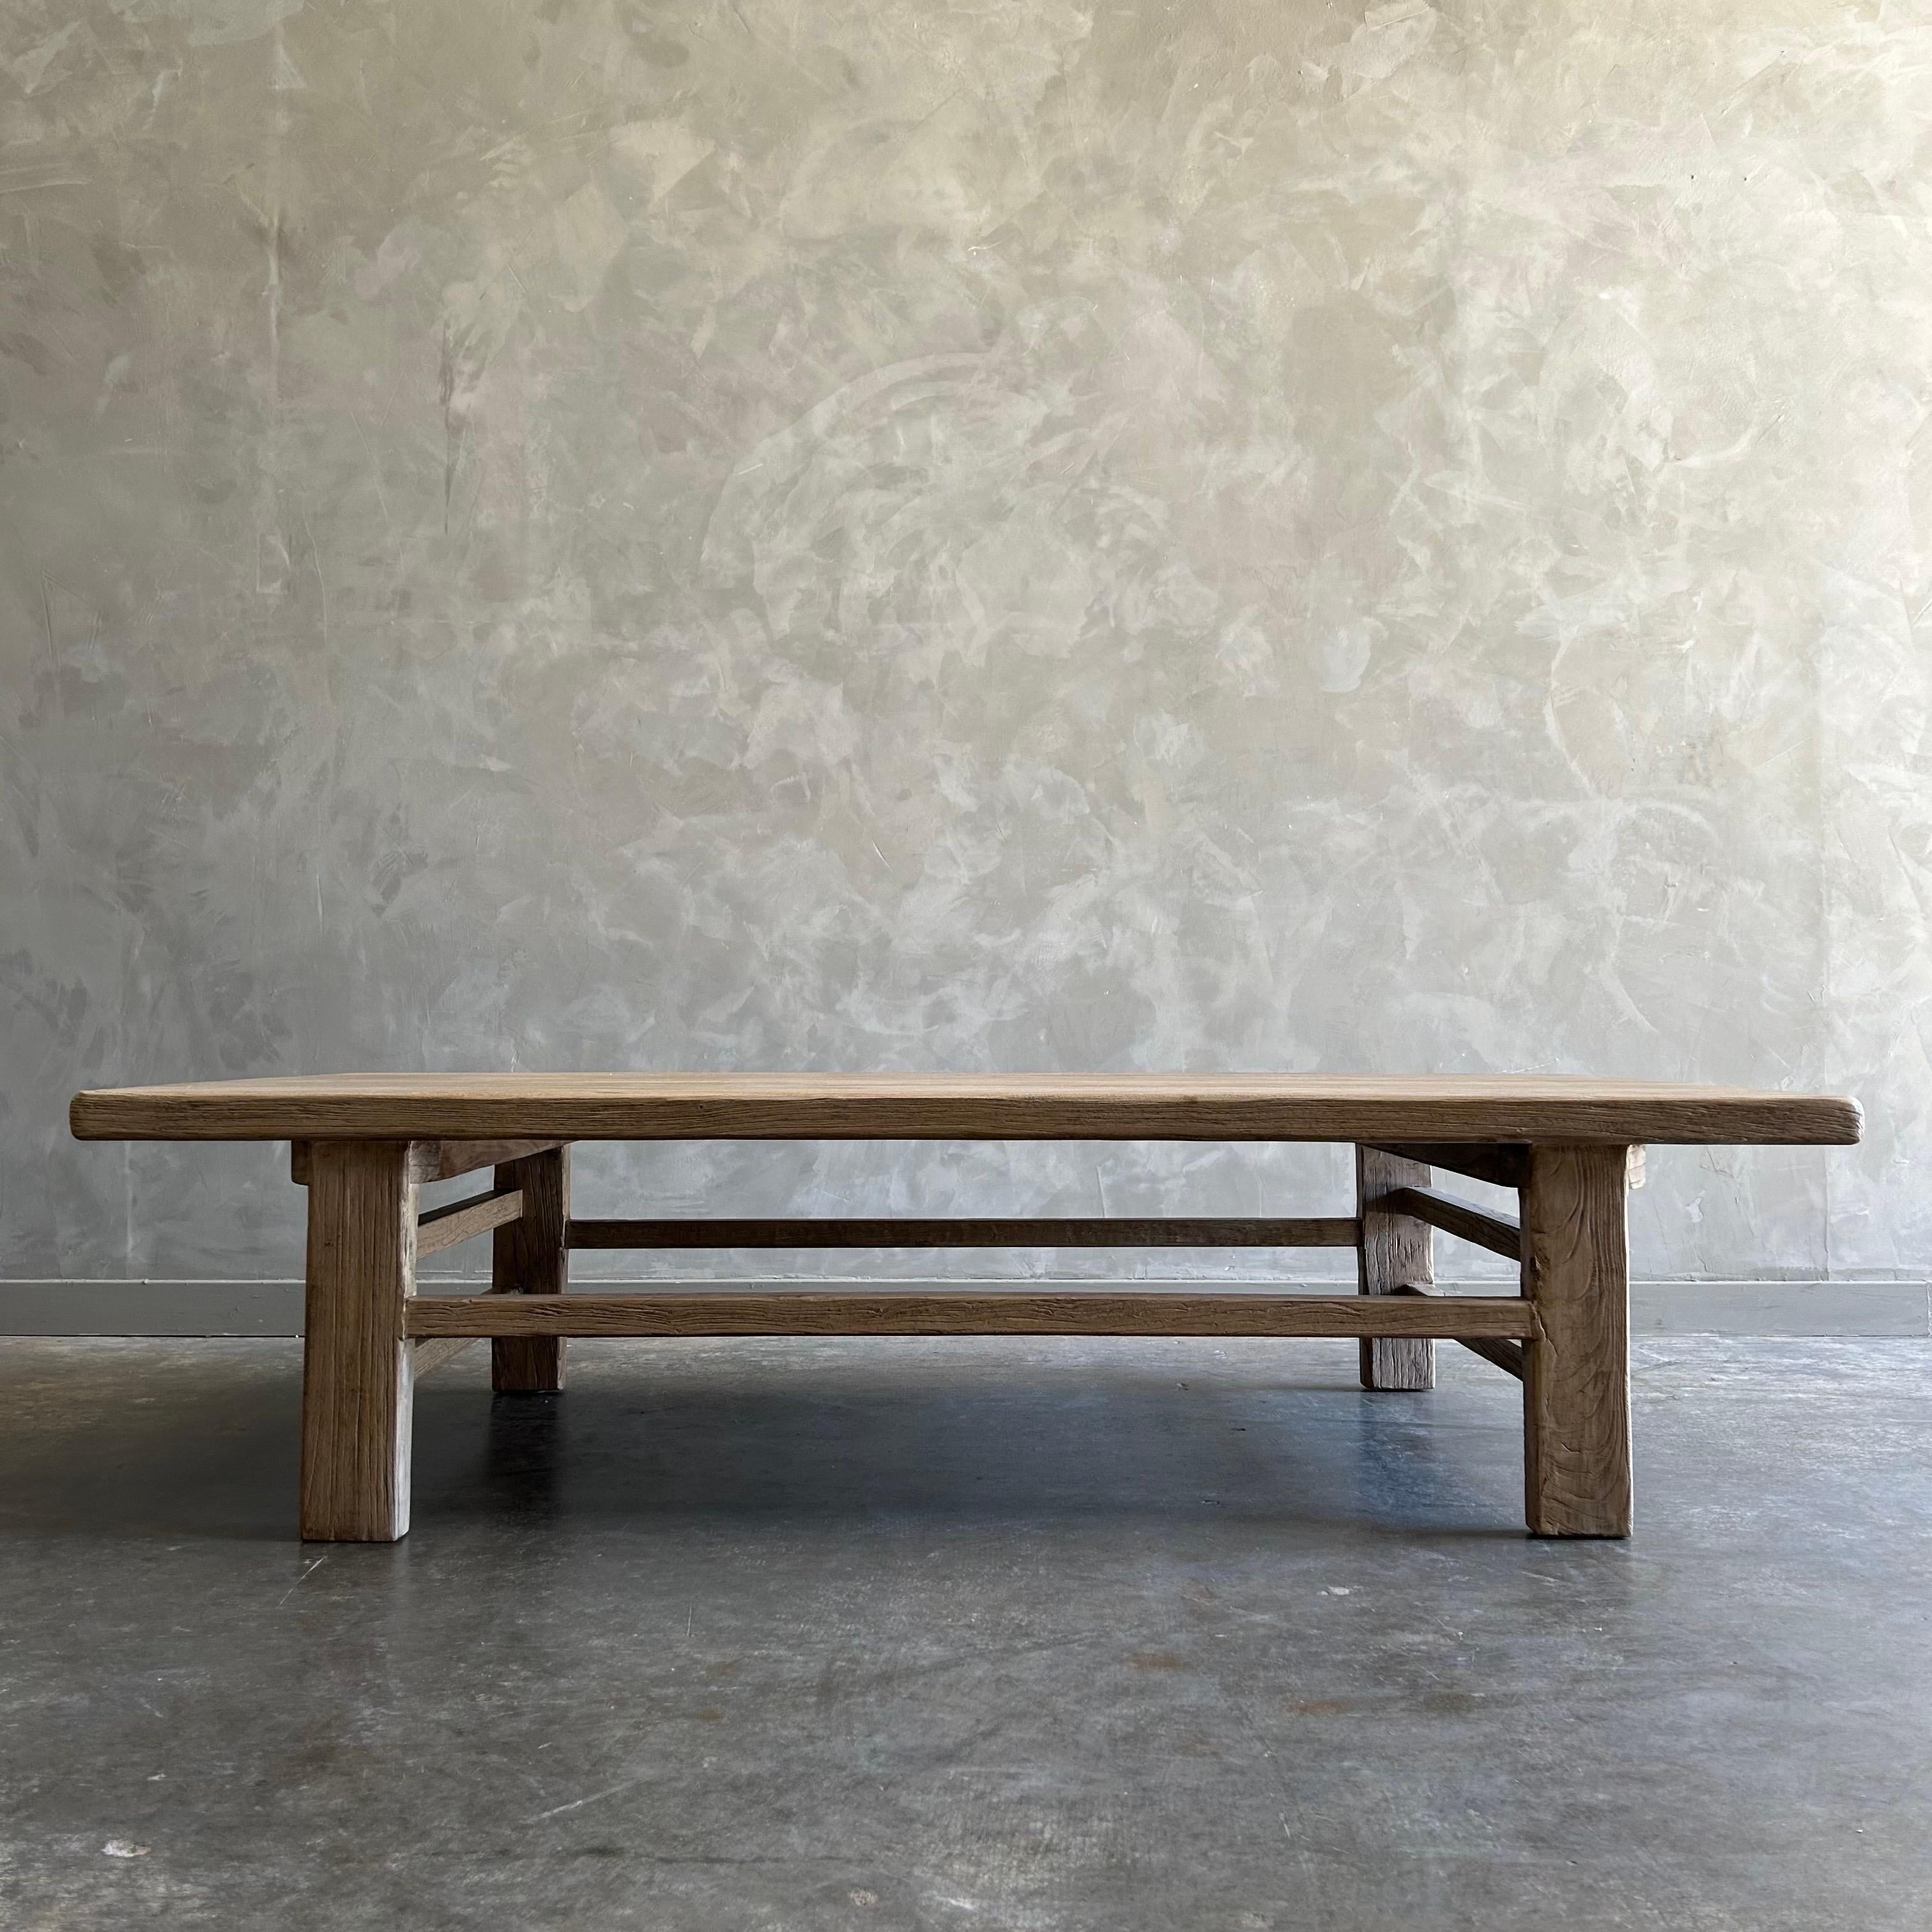 Notre table basse Lucas Reclaimed est le complément parfait de votre espace de vie.  Le plateau de la table en orme massif présente de belles caractéristiques uniques dans le bois.  Il n'y en a pas deux pareils
Finition : Nature / Cire
Dimensions :